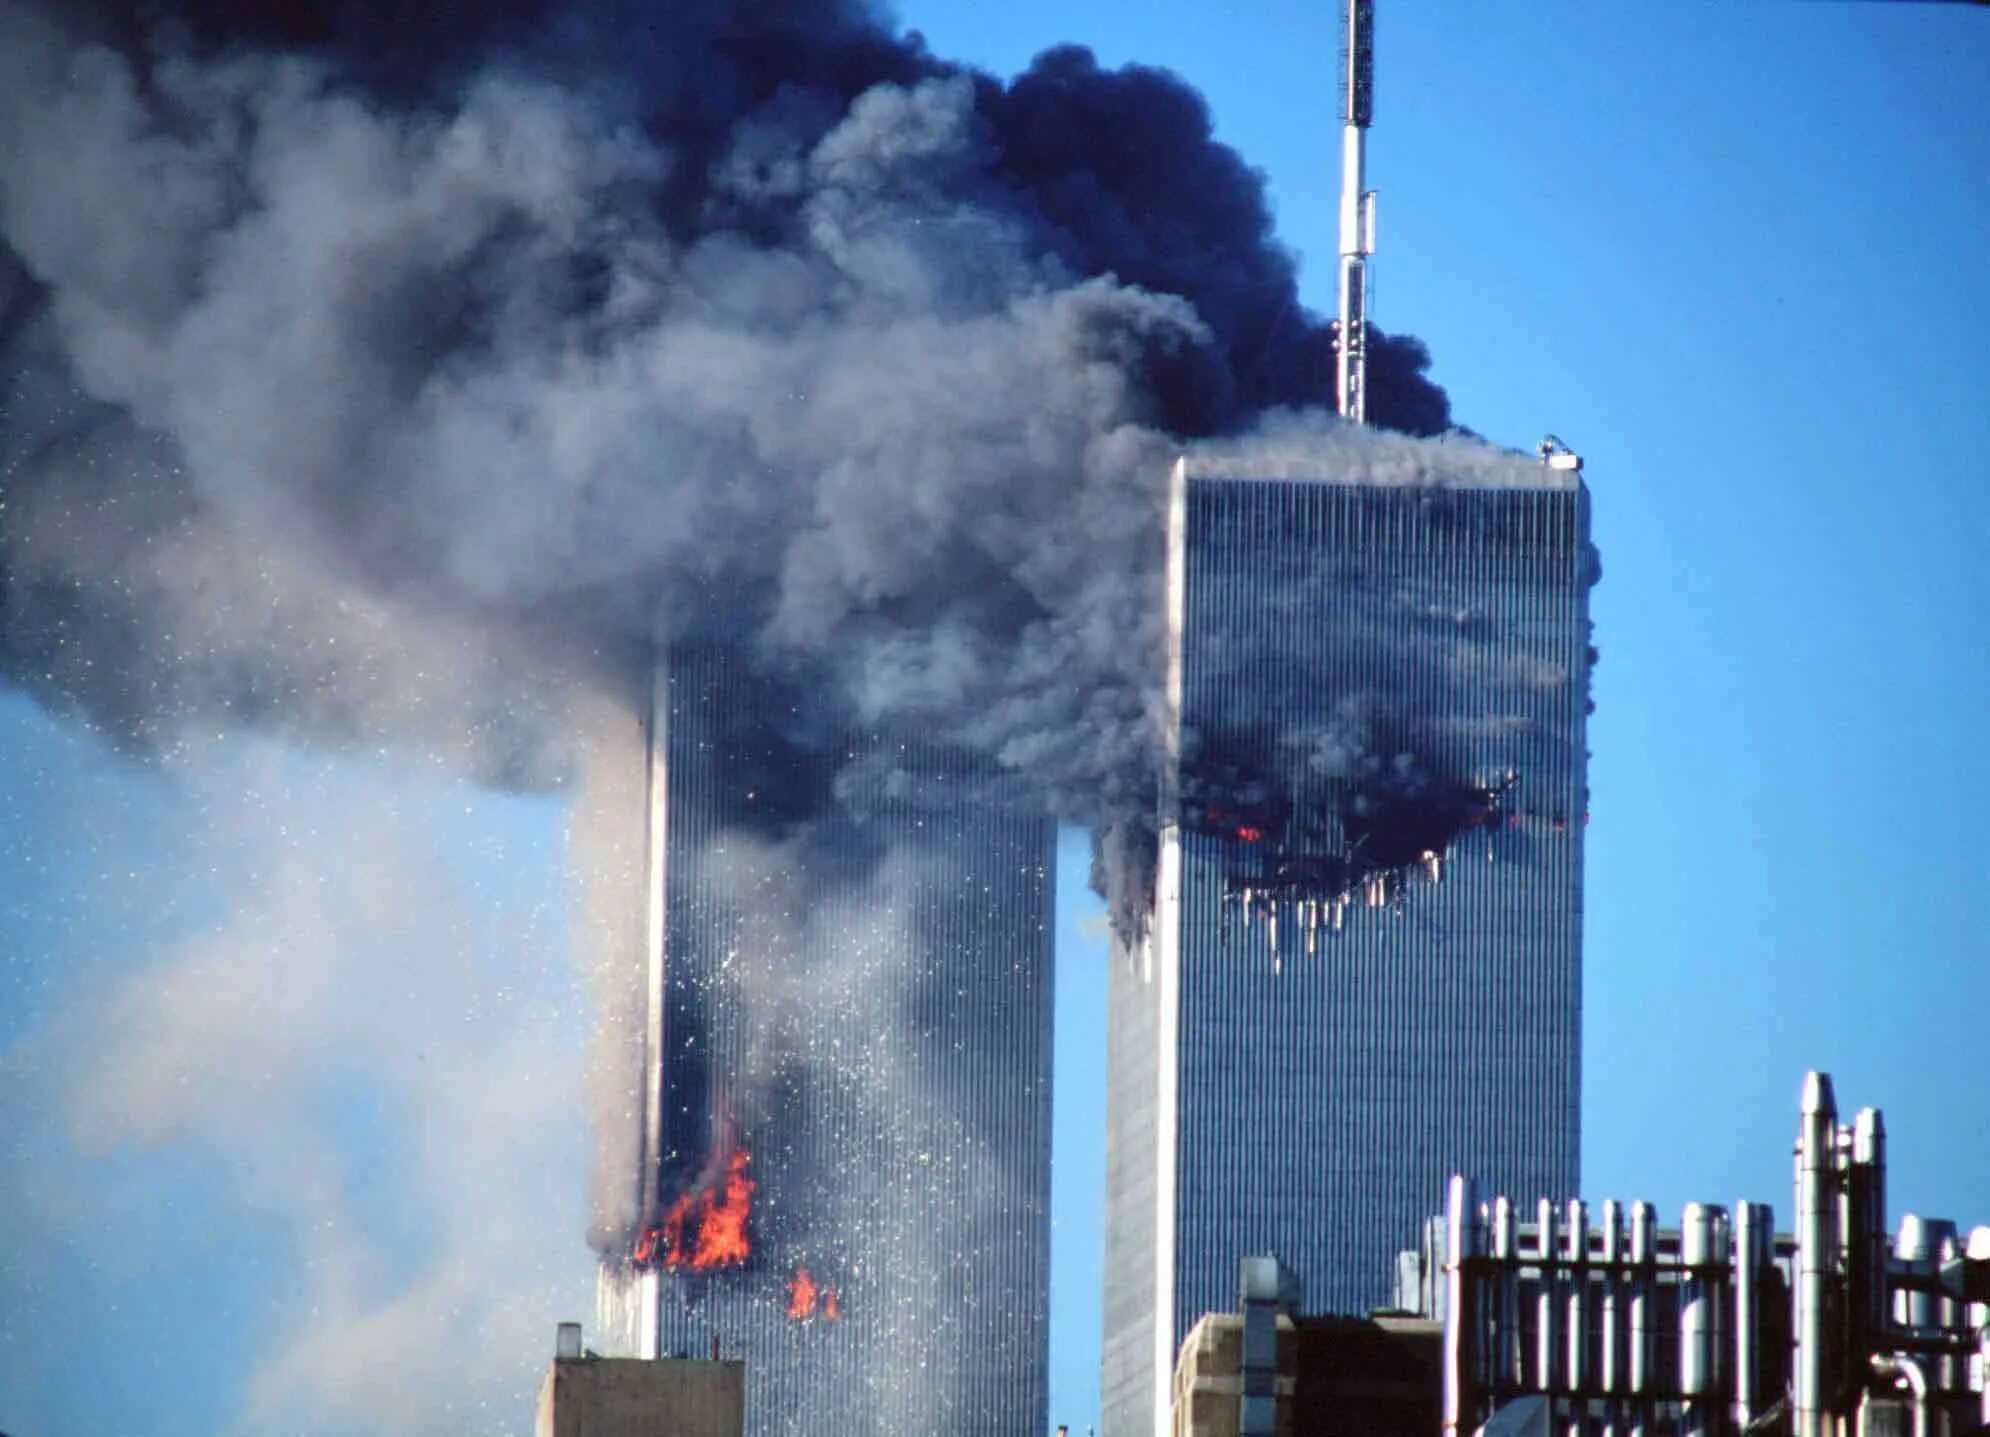 2001 год 11 сентября башни. Башни-Близнецы 11 сентября 2001. Аль Каида 11 сентября 2001. ВТЦ Нью-Йорк башни Близнецы. Теракты 11 сентября 2001 года.